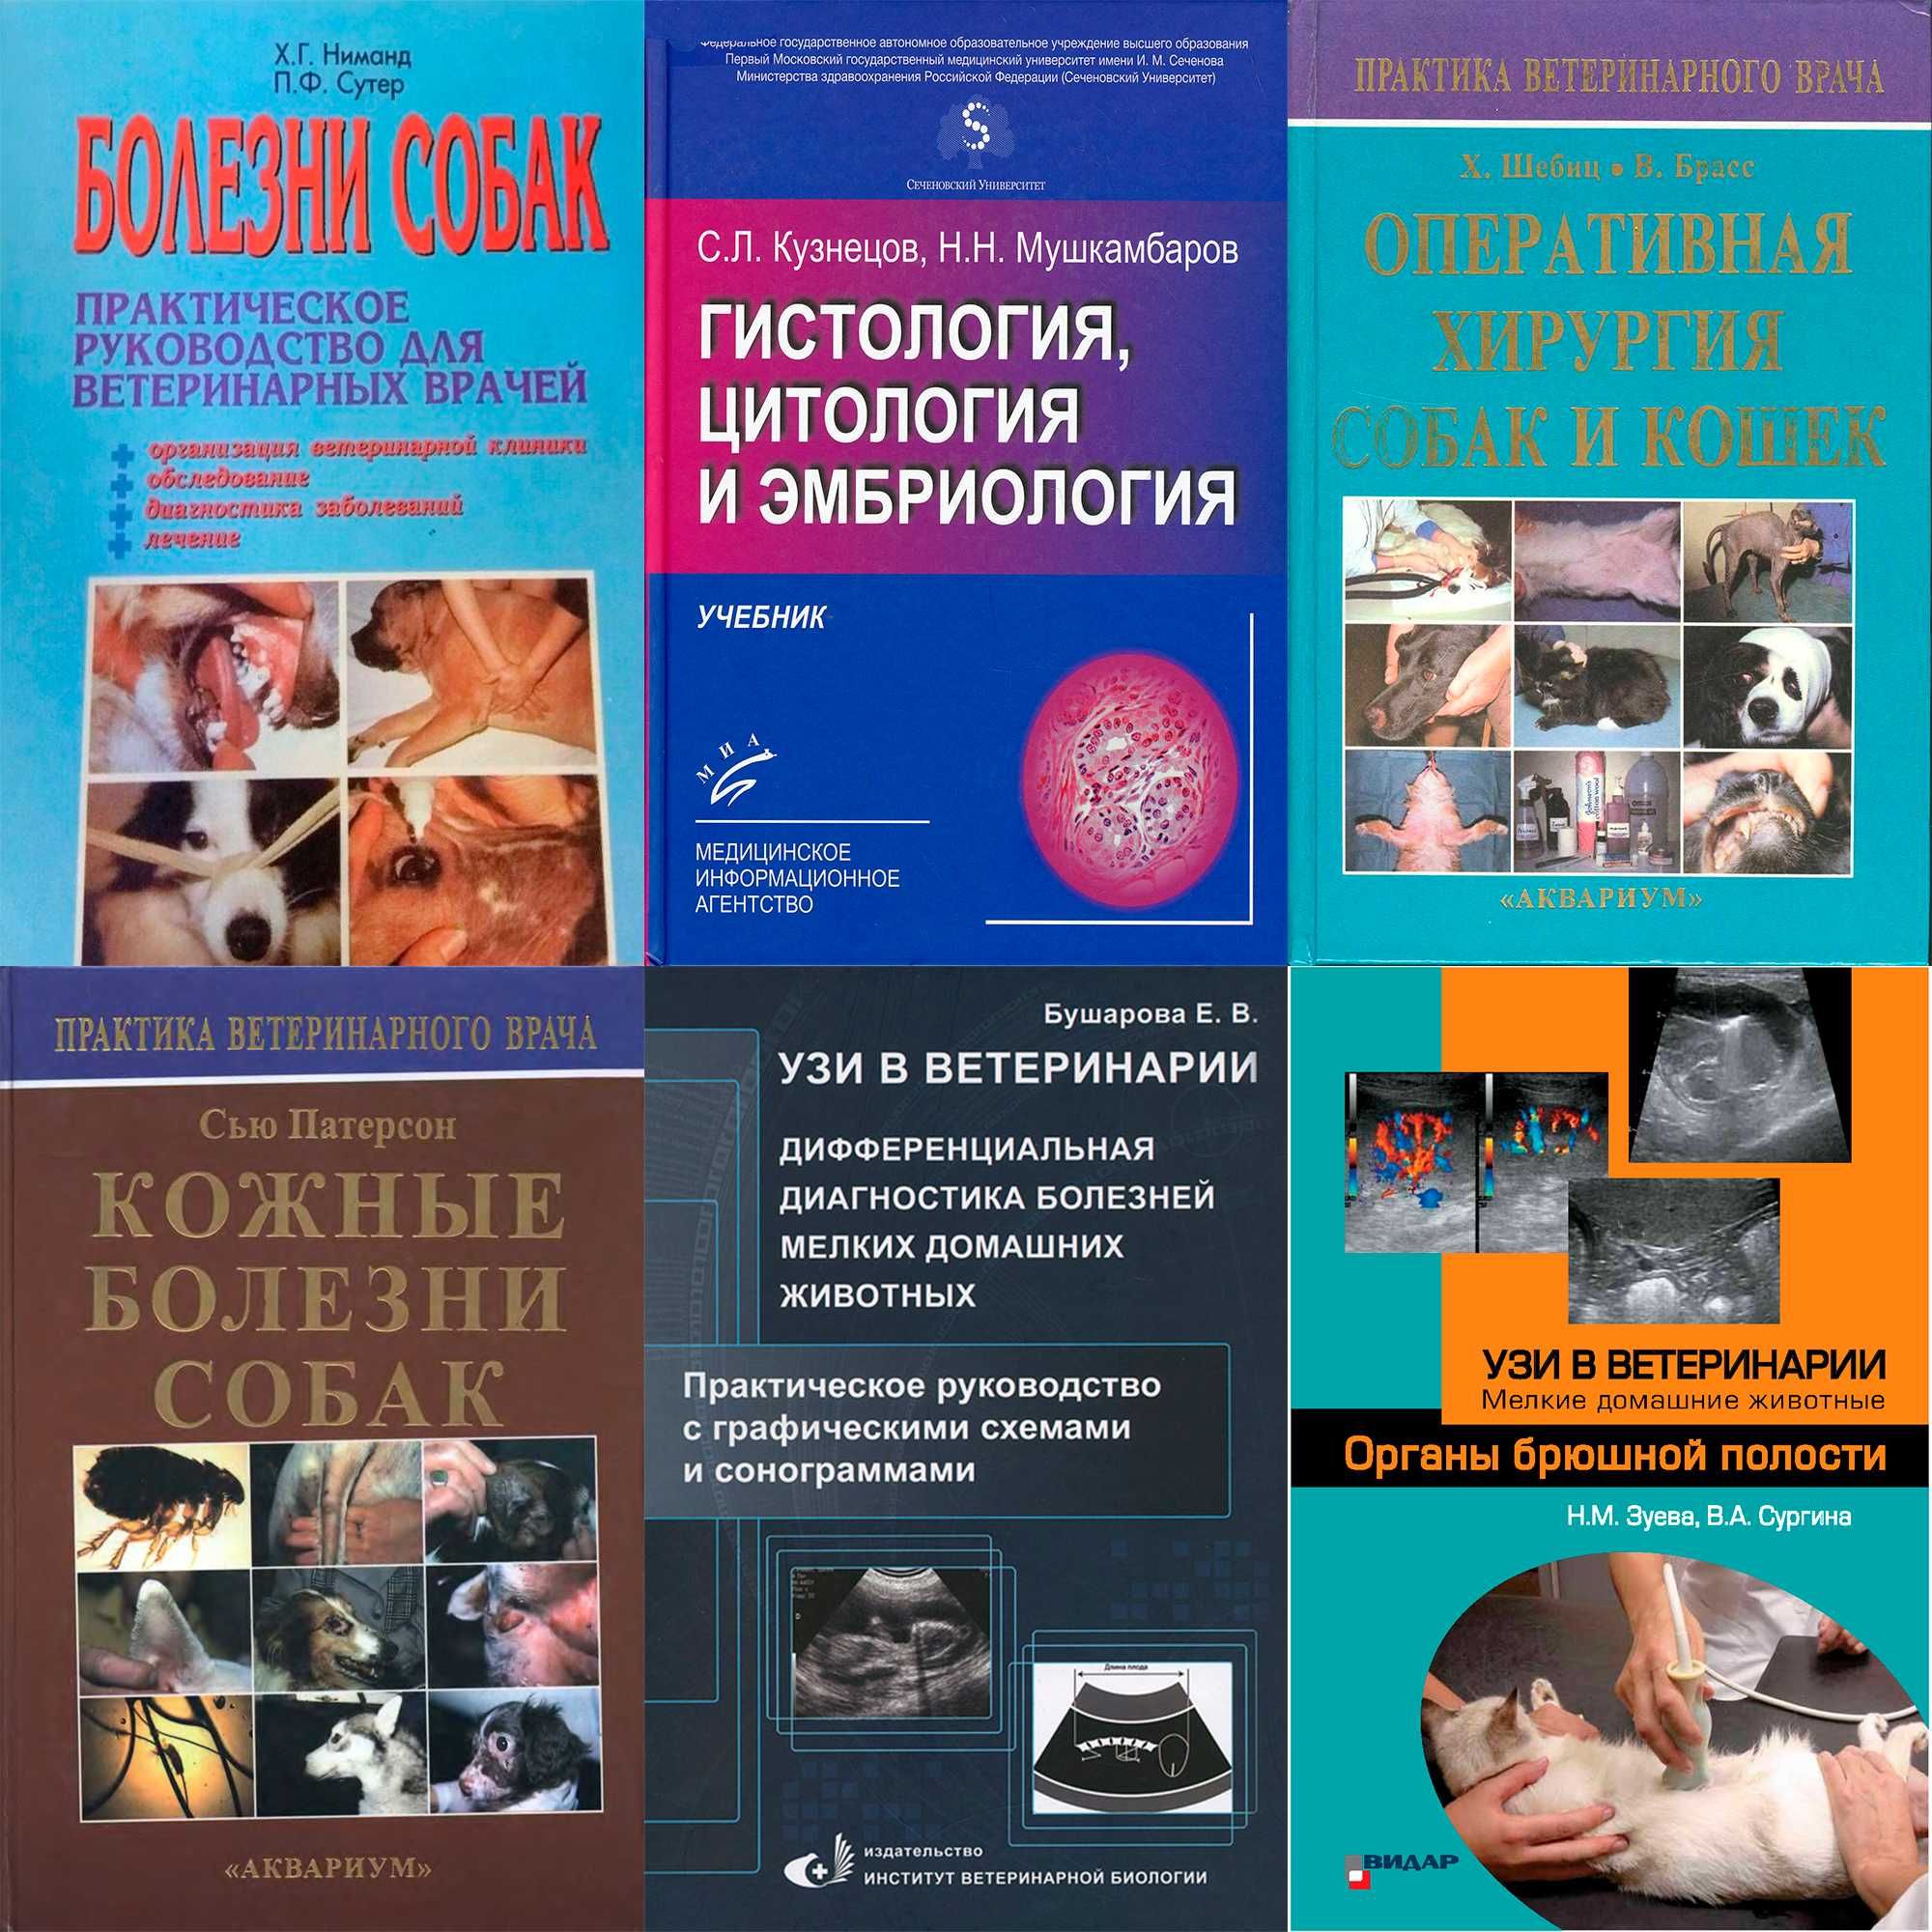 Учебники книги по медицине  и ветеринарии 2 Низкие цены